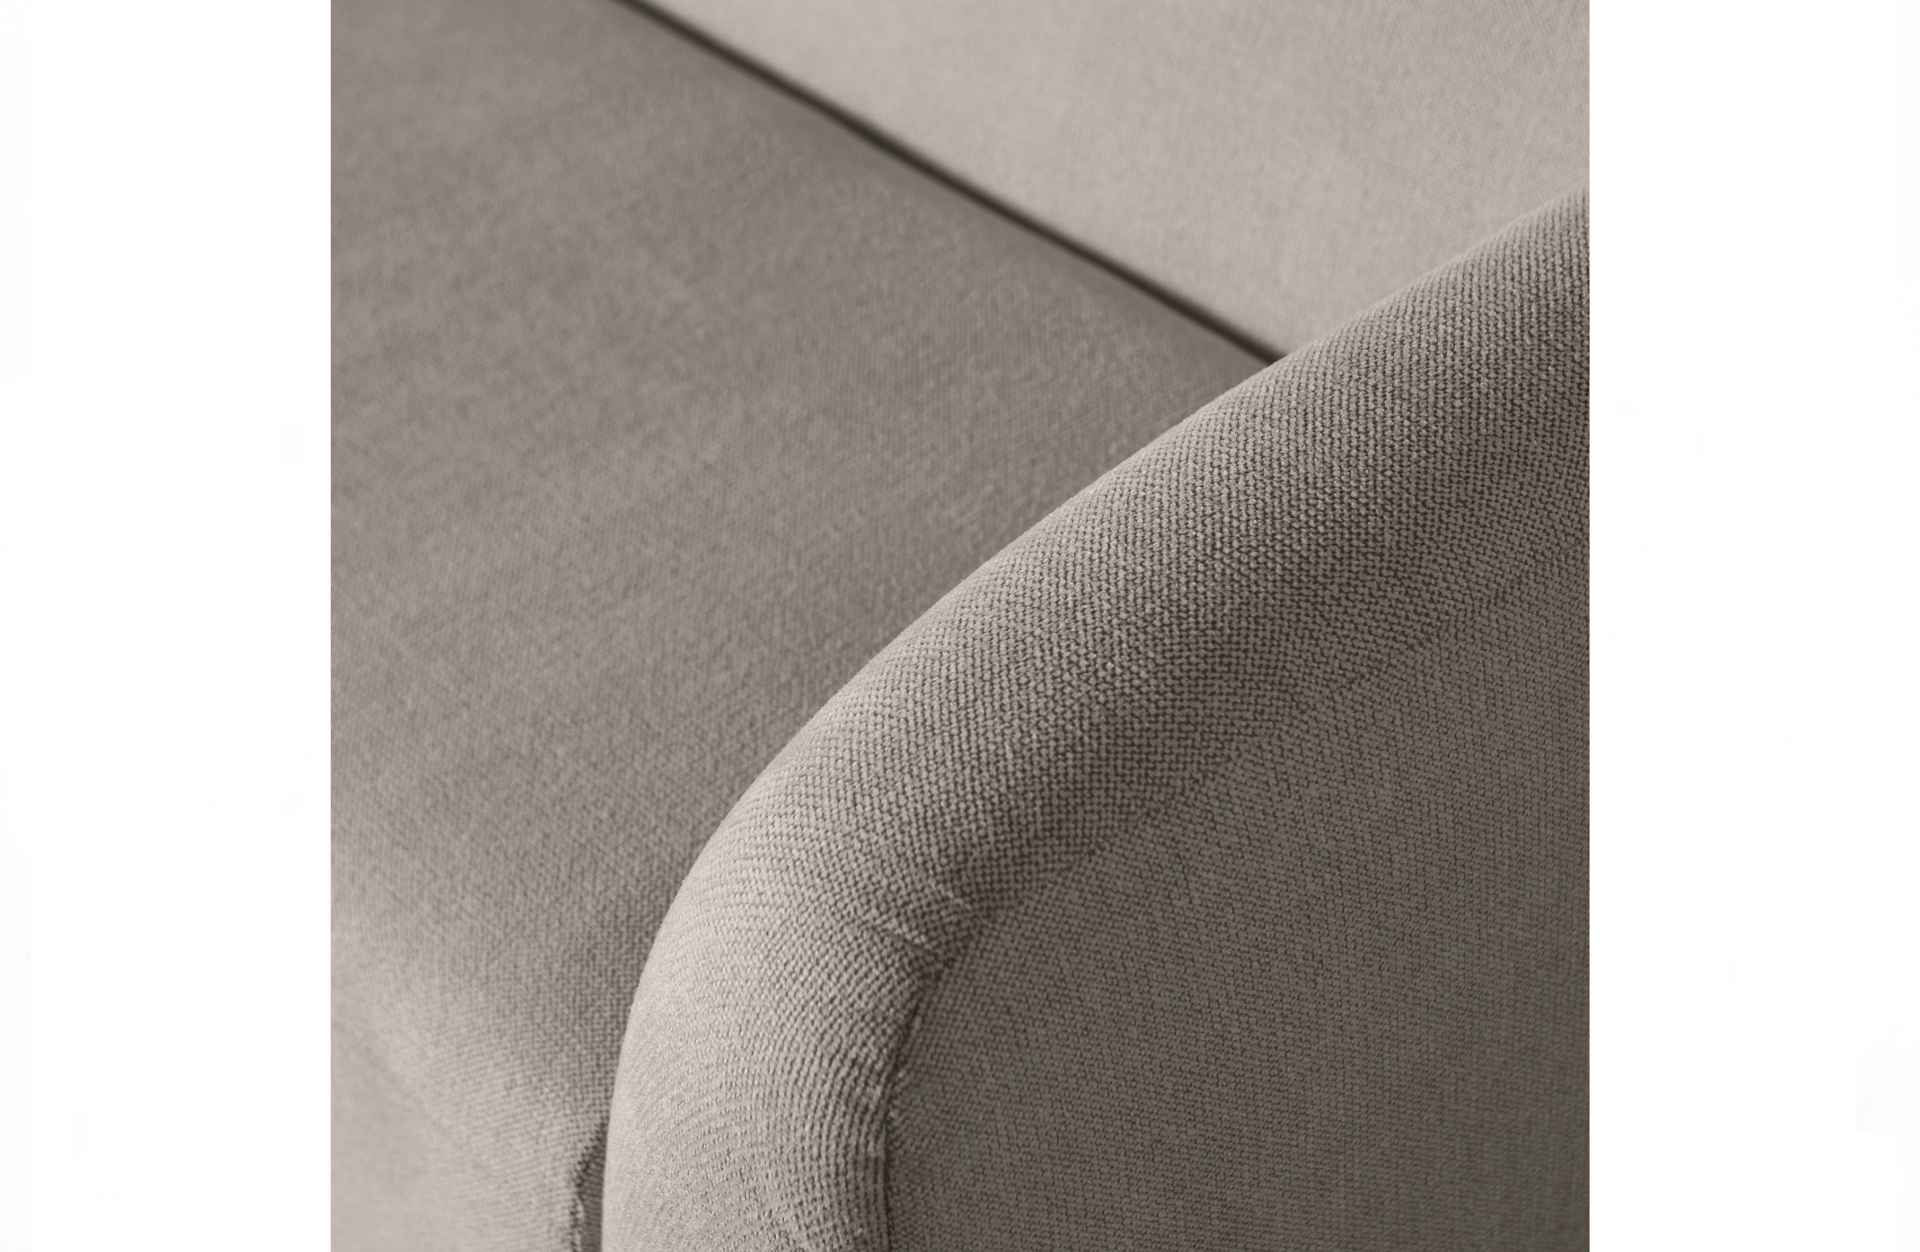 Das 3-Sitzer Sofa Sloping überzeugt mit seinem modernen Design. Gefertigt wurde es aus Kunststofffasern, welche einen einen grauen Farbton besitzen. Das Sofa hat eine Breite von 240 cm und eine Sitzhöhe von 43 cm.